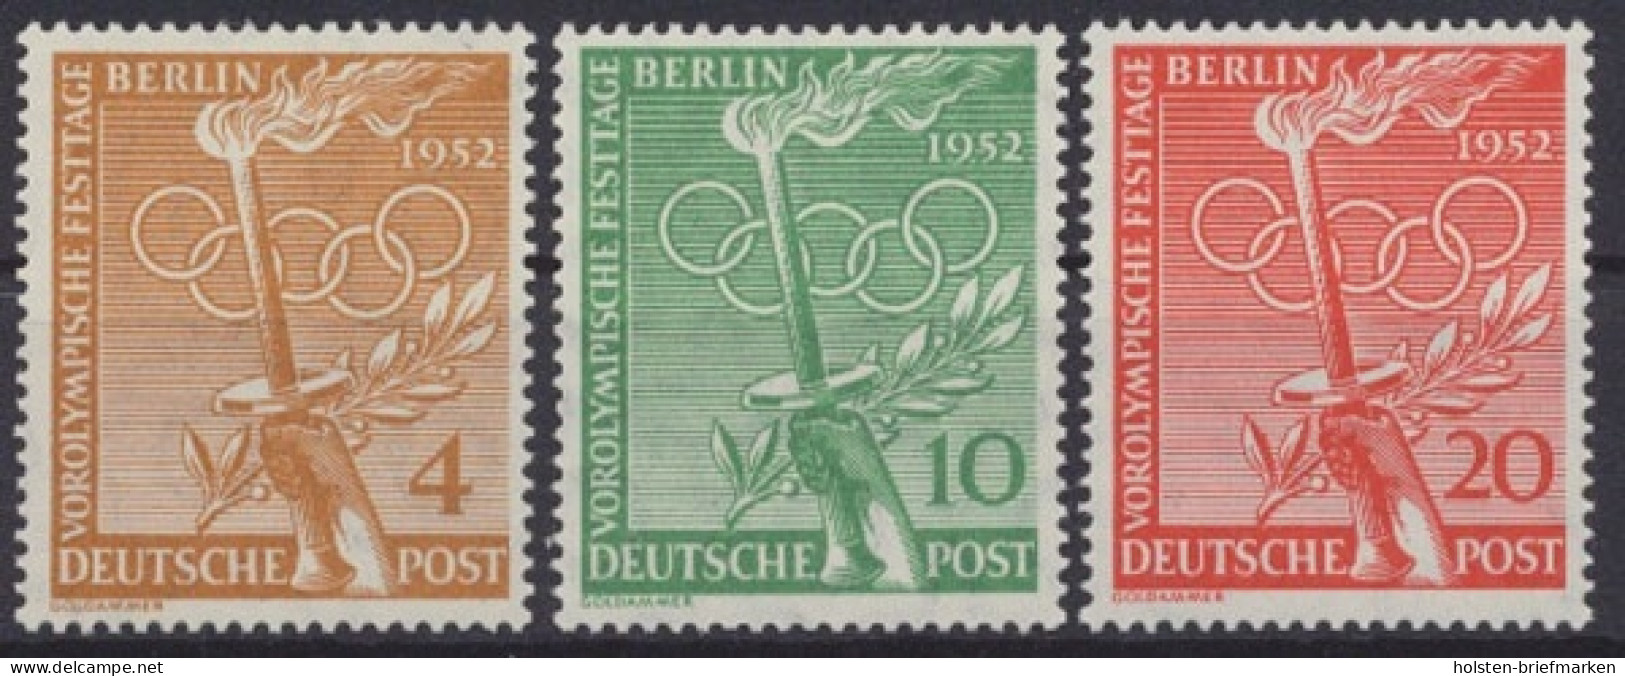 Berlin, Michel Nr. 88-90, Postfrisch / MNH - Nuovi